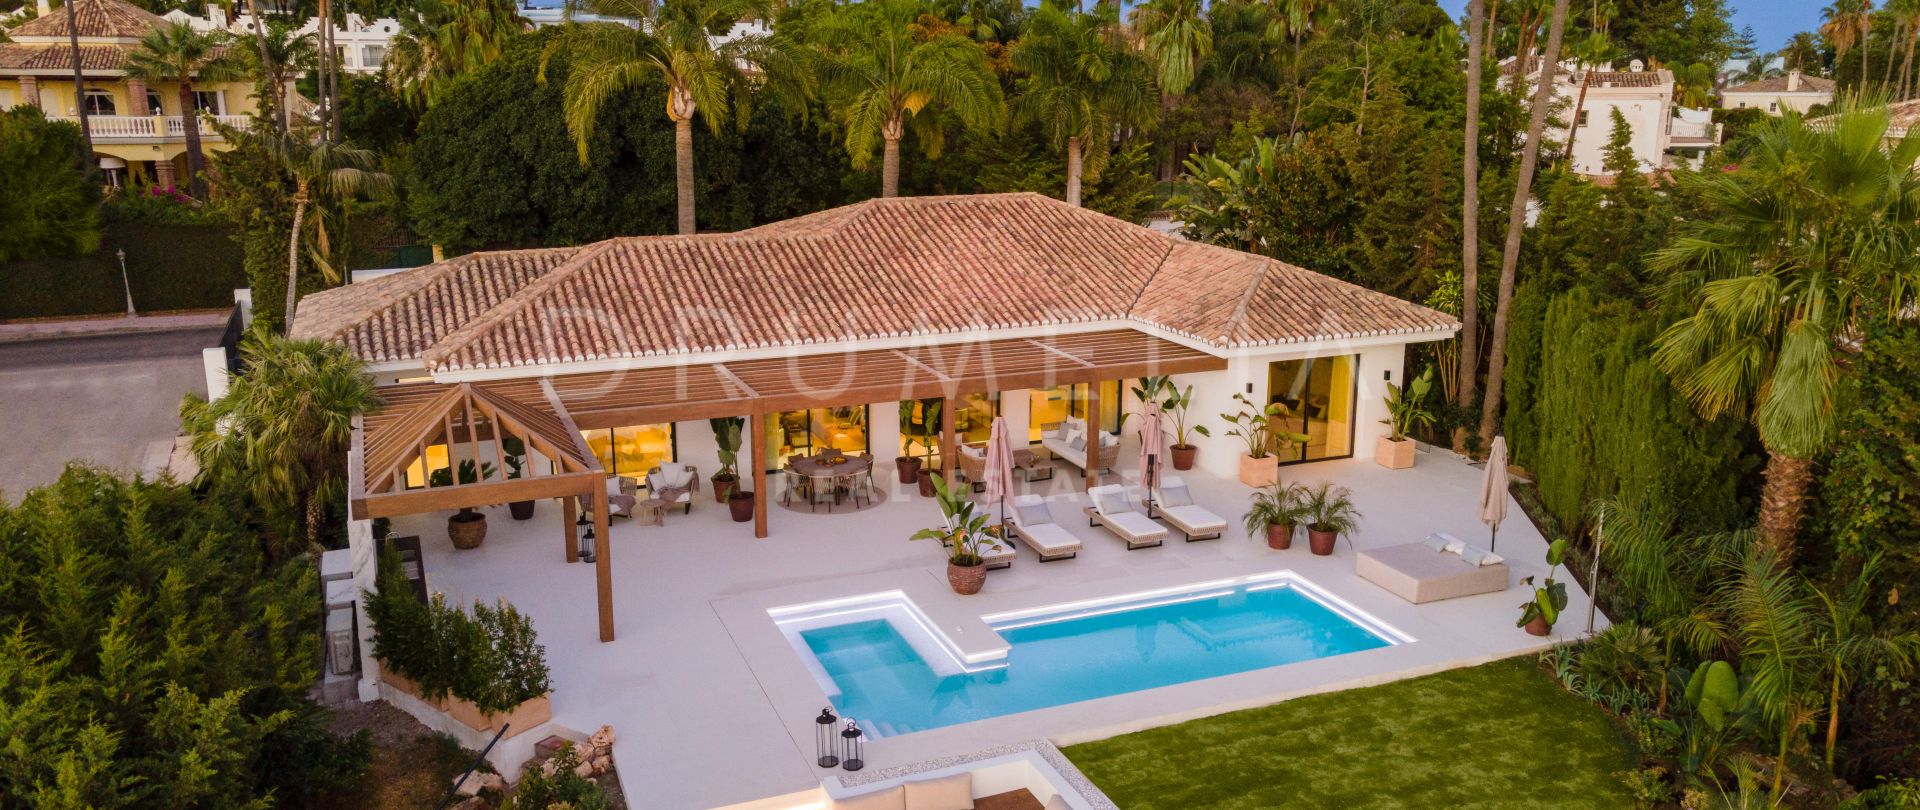 Villa Clara - Фешенебельная вилла в андалузском стиле с современным элитным интерьером на продажу в Aloha, Новая Андалусия